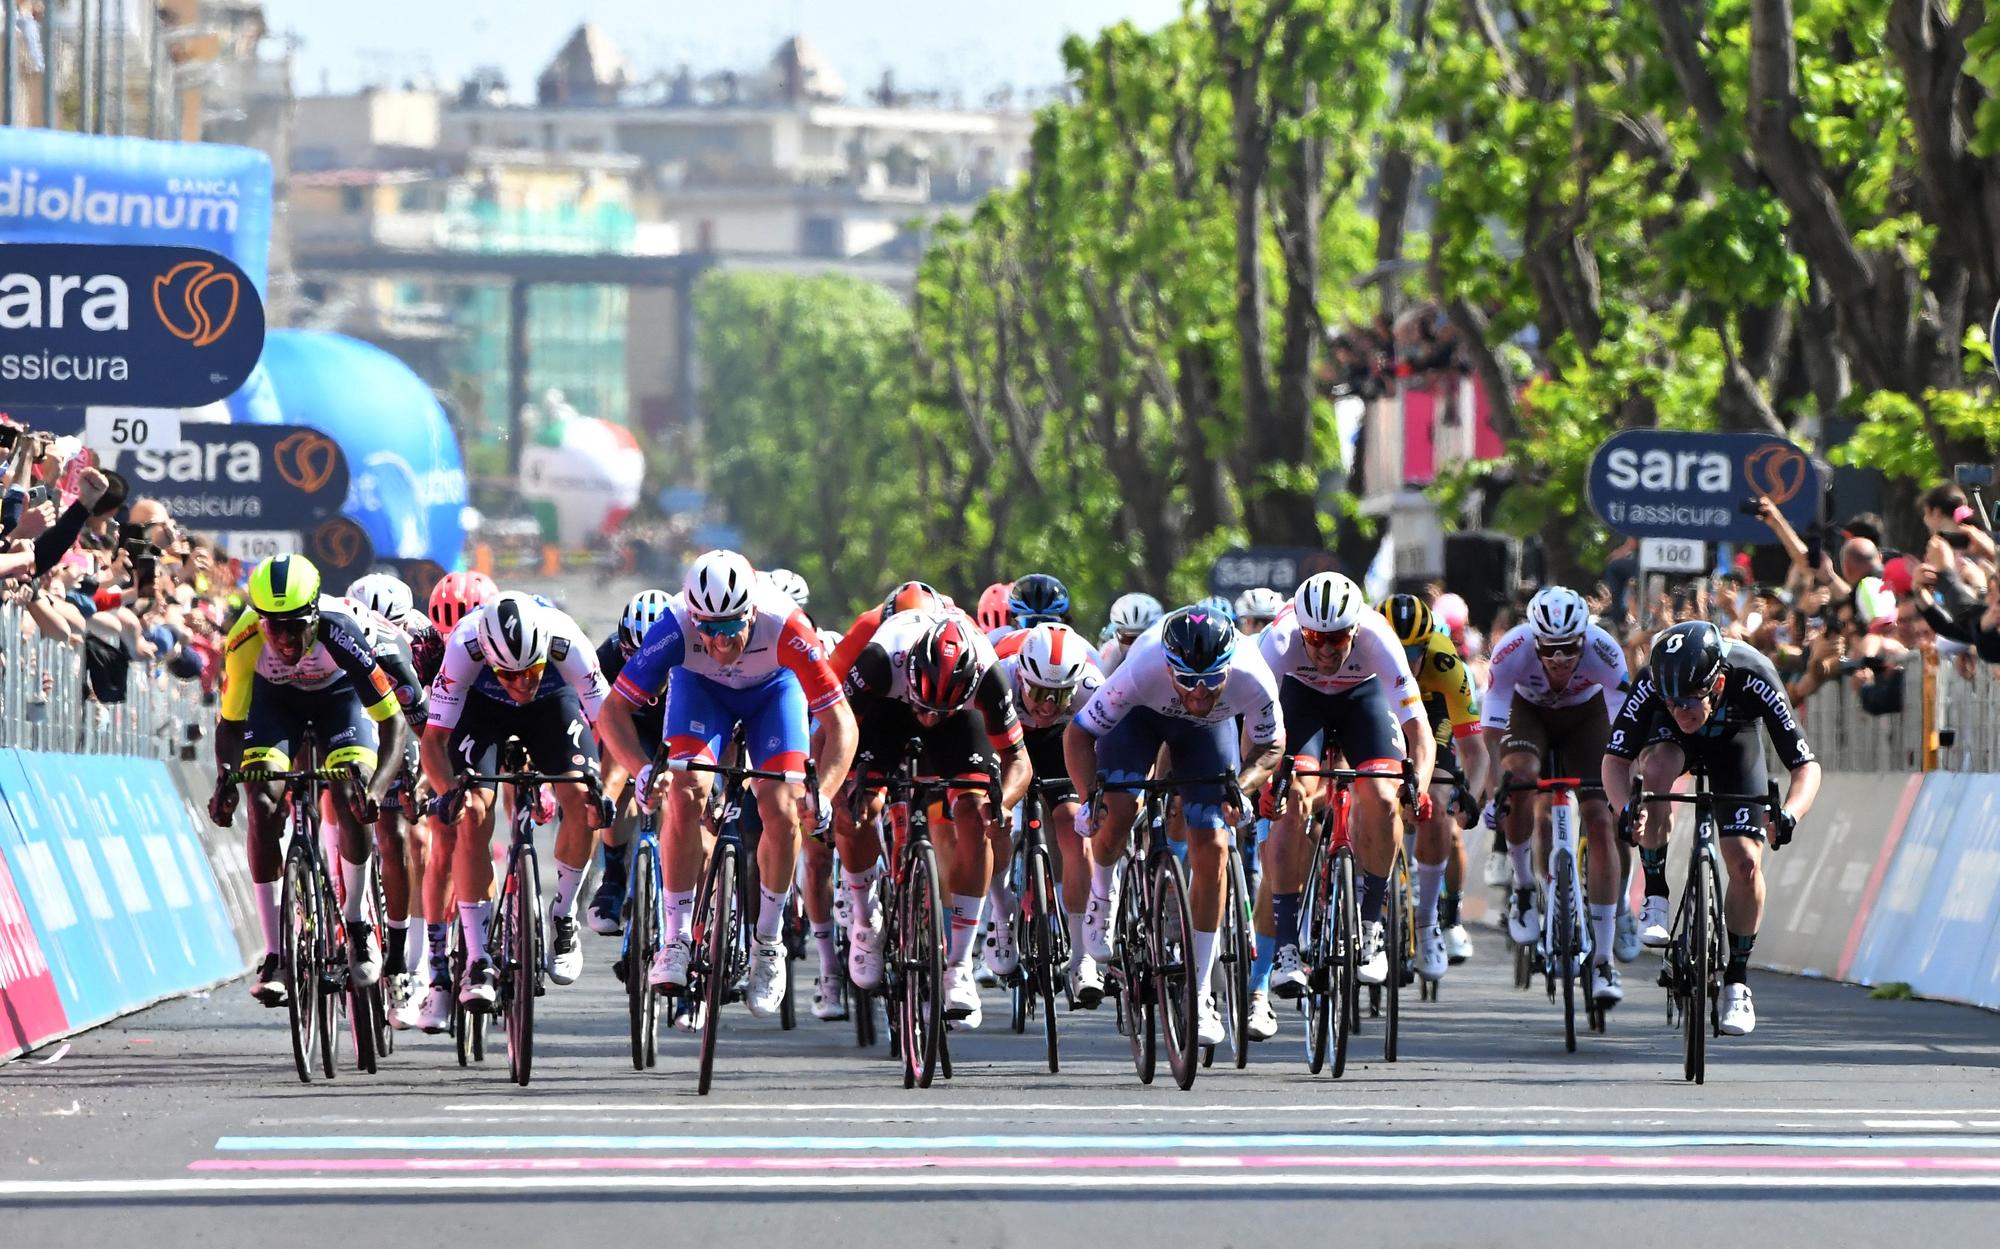 Giro d'Italia - Stage 5 - Catania to Messina